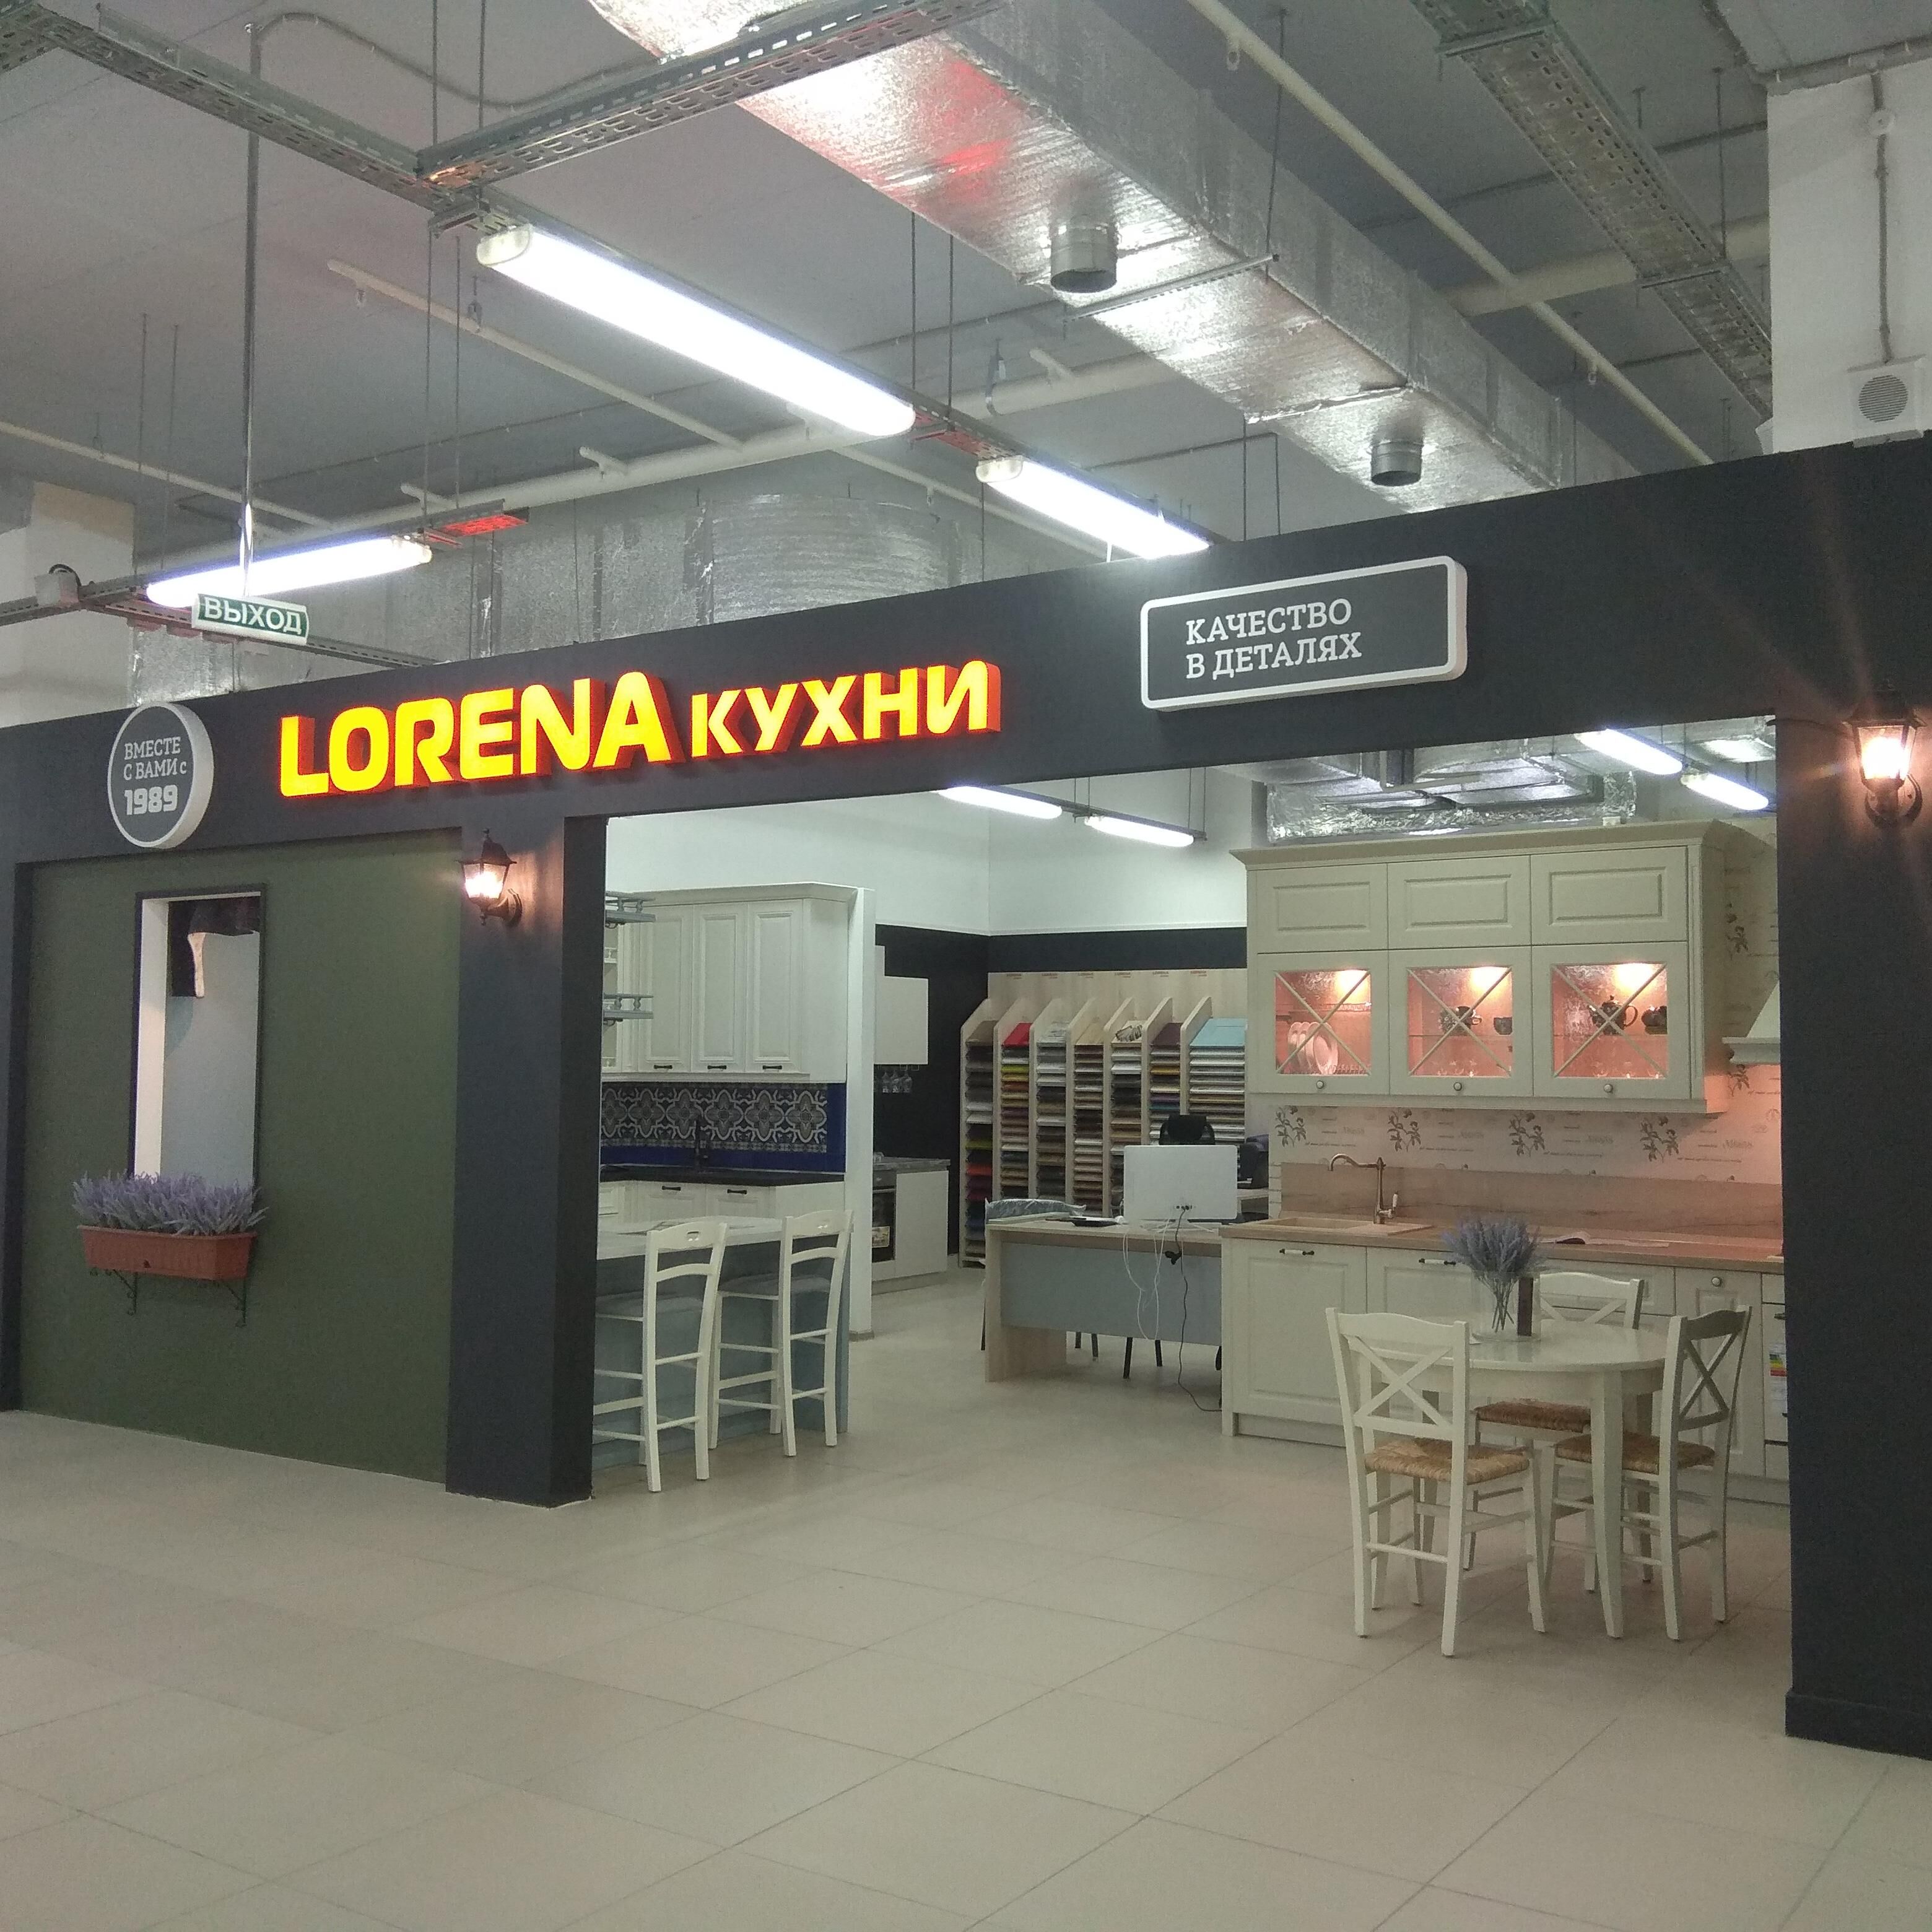 Второй салон LORENA кухни открылся в Волгограде!